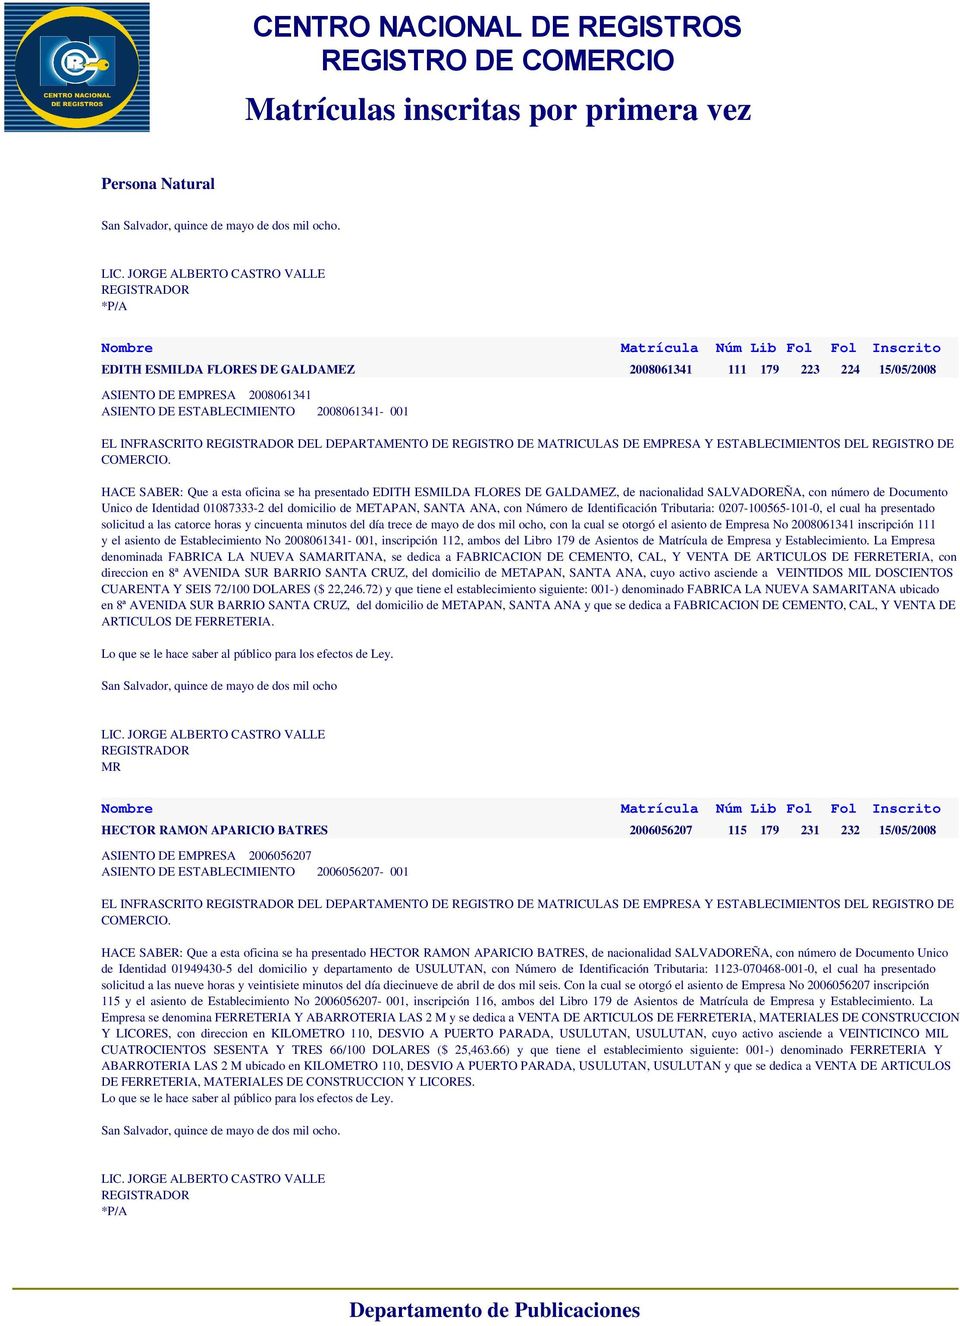 EDITH ESMILDA FLORES DE GALDAMEZ, de nacionalidad SALVADOREÑA, con número de Documento Unico de Identidad 01087333-2 del domicilio de METAPAN, SANTA ANA, con Número de Identificación Tributaria: